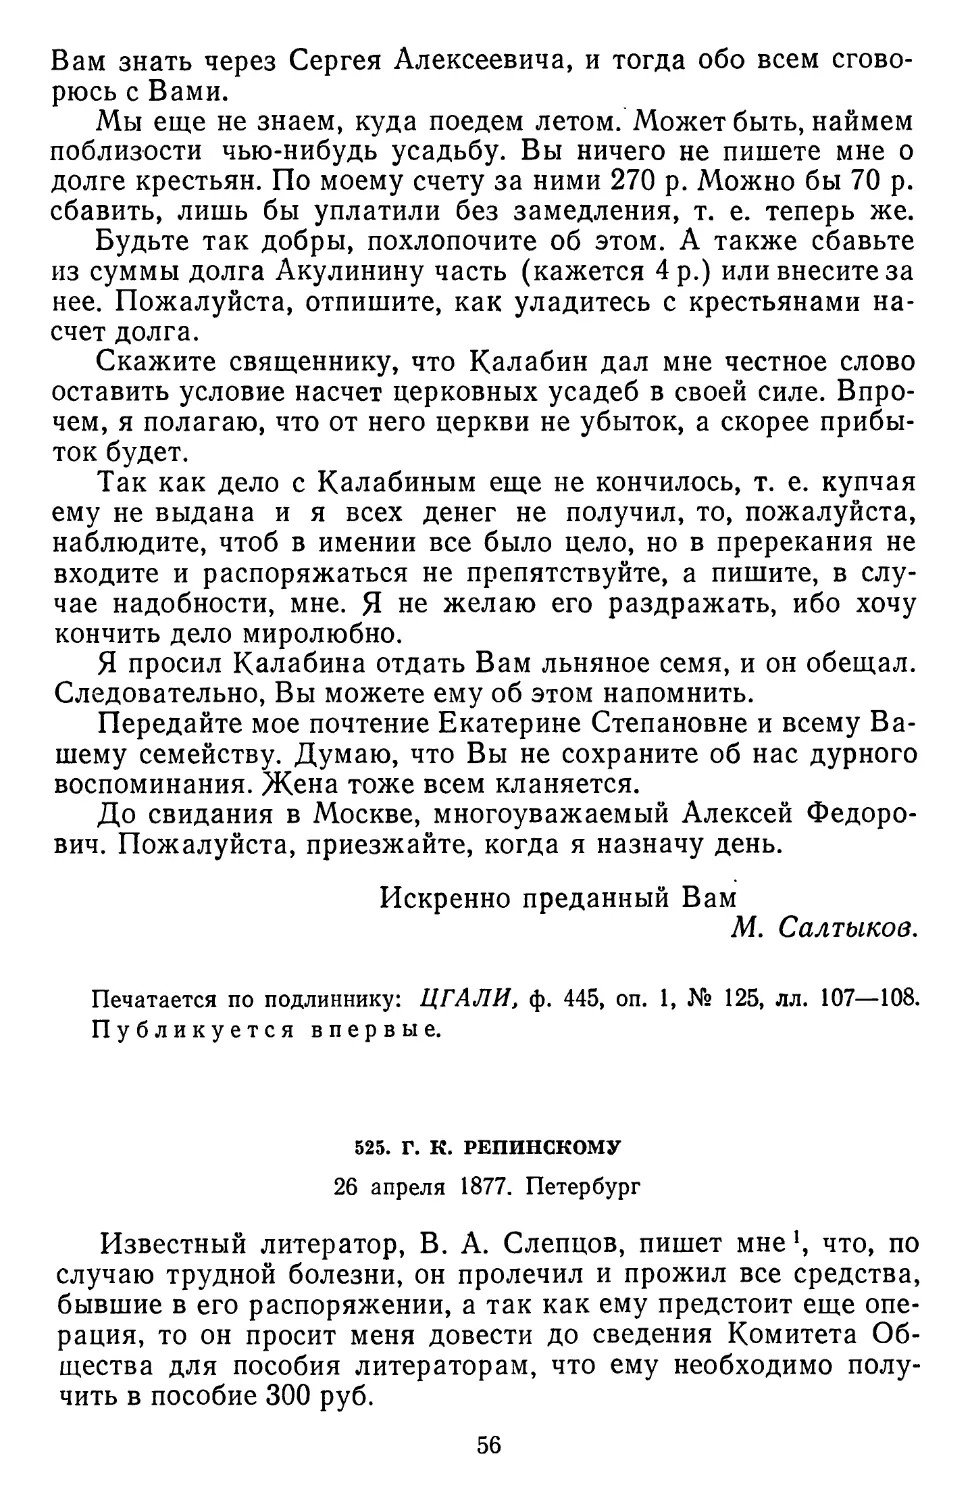 525.Г. К. Репинскому. 26 апреля 1877. Петербург